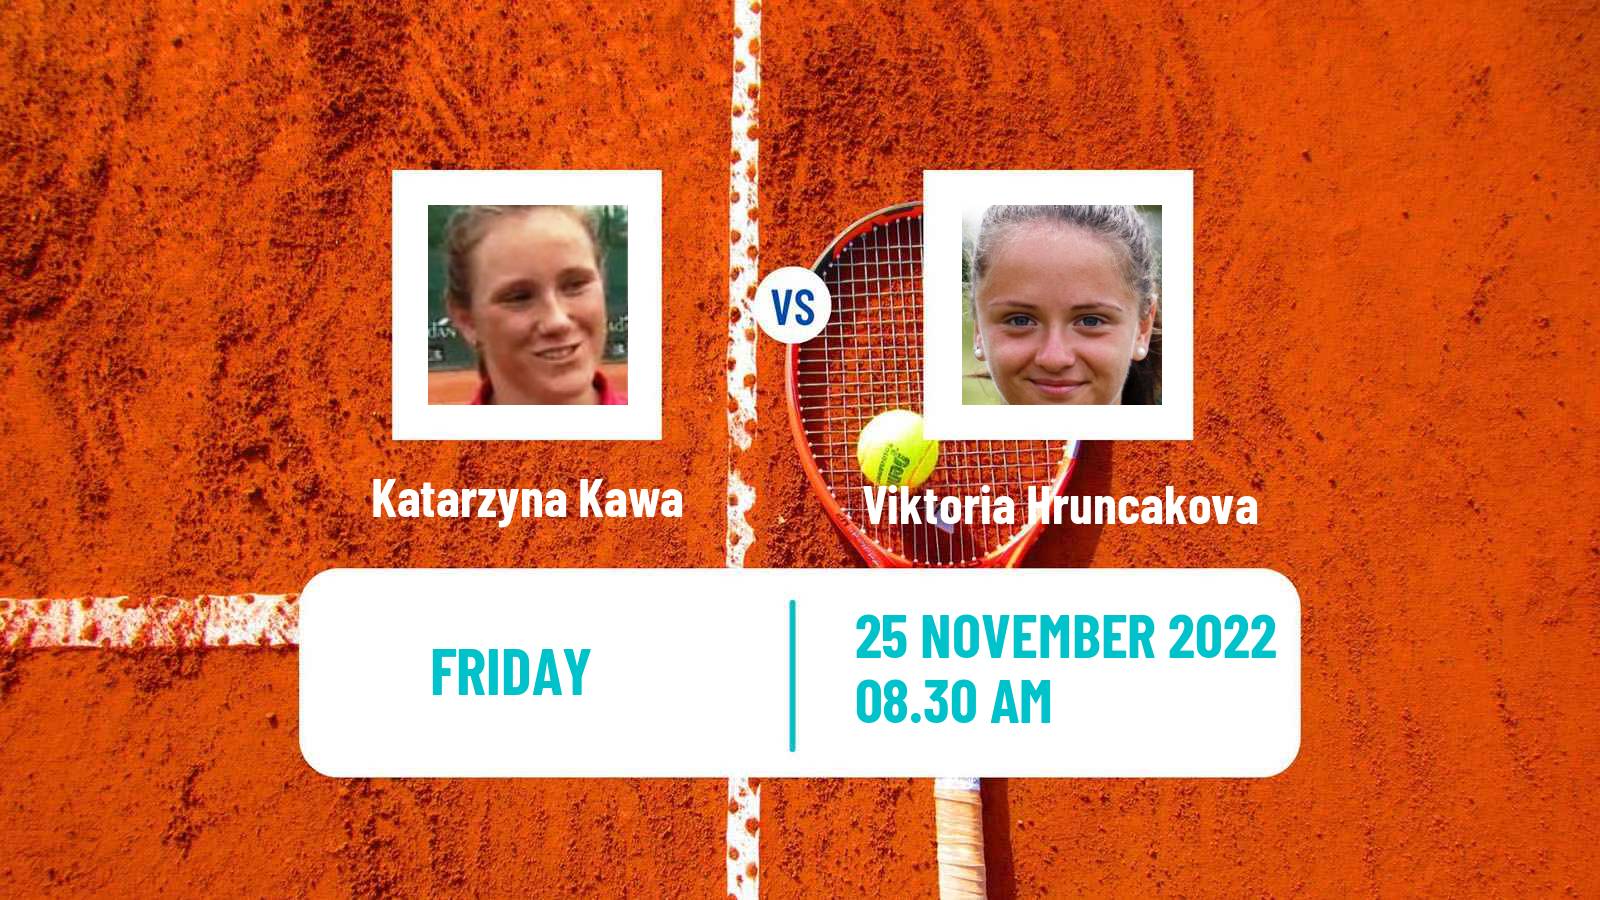 Tennis ITF Tournaments Katarzyna Kawa - Viktoria Hruncakova